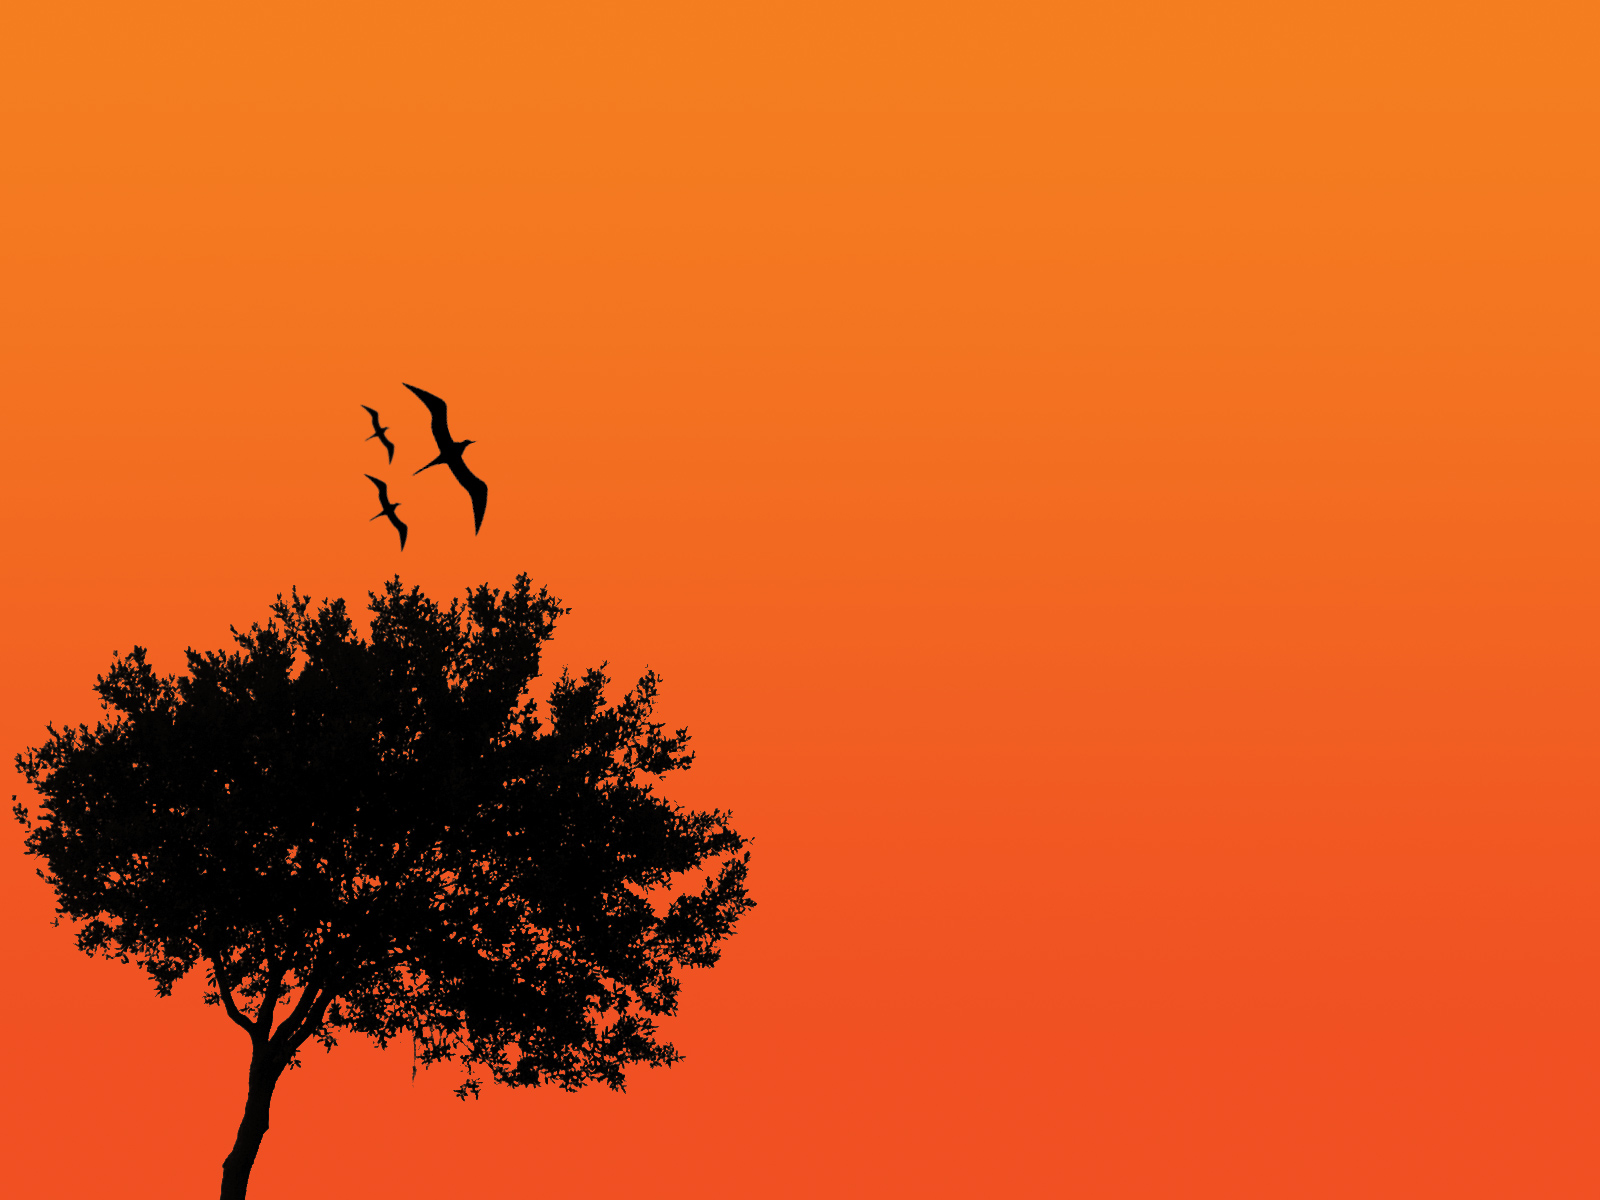 Скачать обои бесплатно Природа, Птицы, Дерево, Художественные, Оранжевый Цвет) картинка на рабочий стол ПК